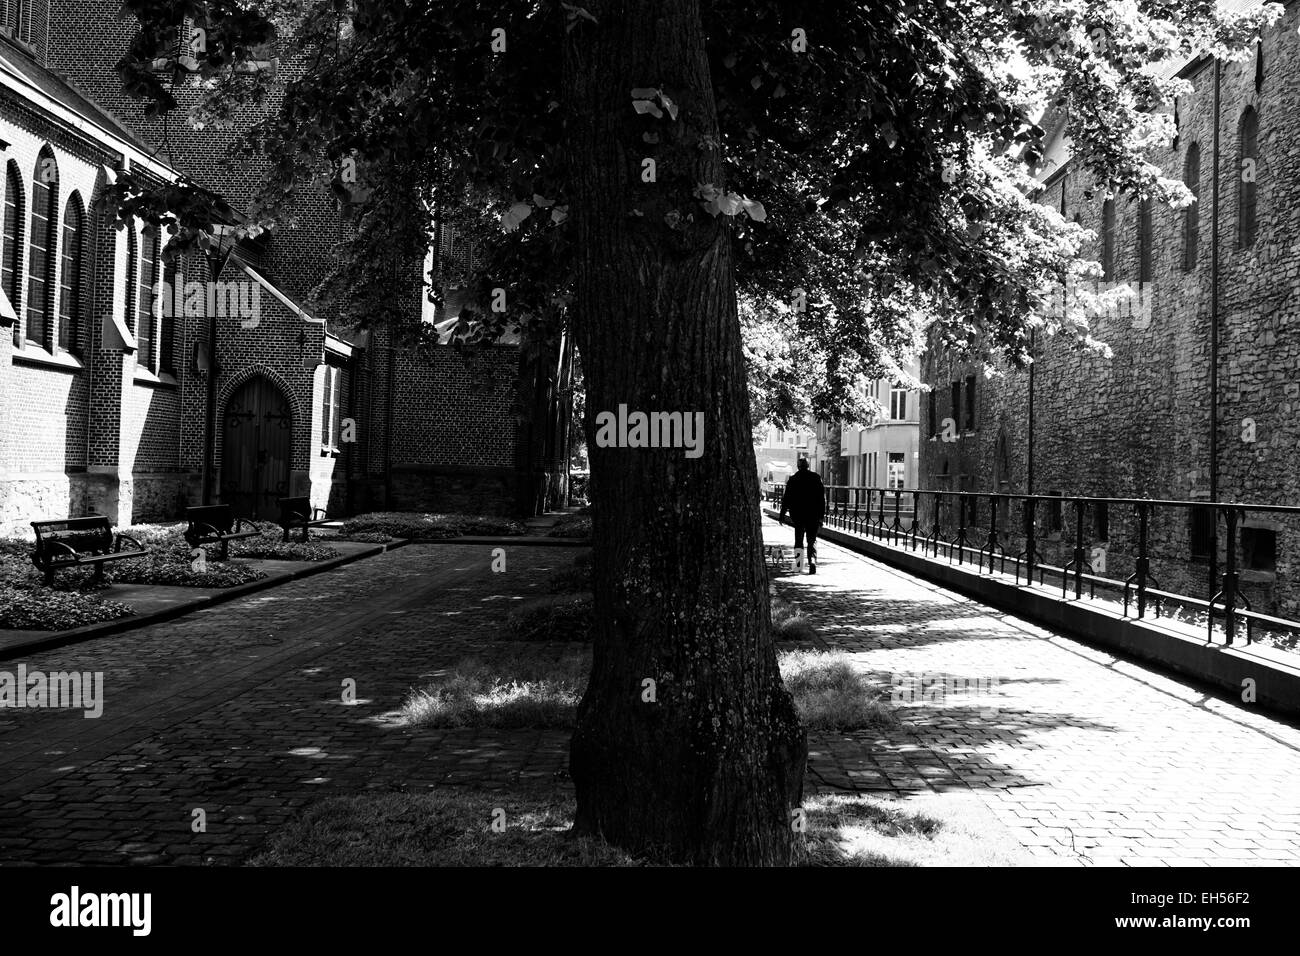 Straßenszene in Gent, Belgien. Schuss von einem Baum und Gehweg zwischen Gebäuden. Stockfoto